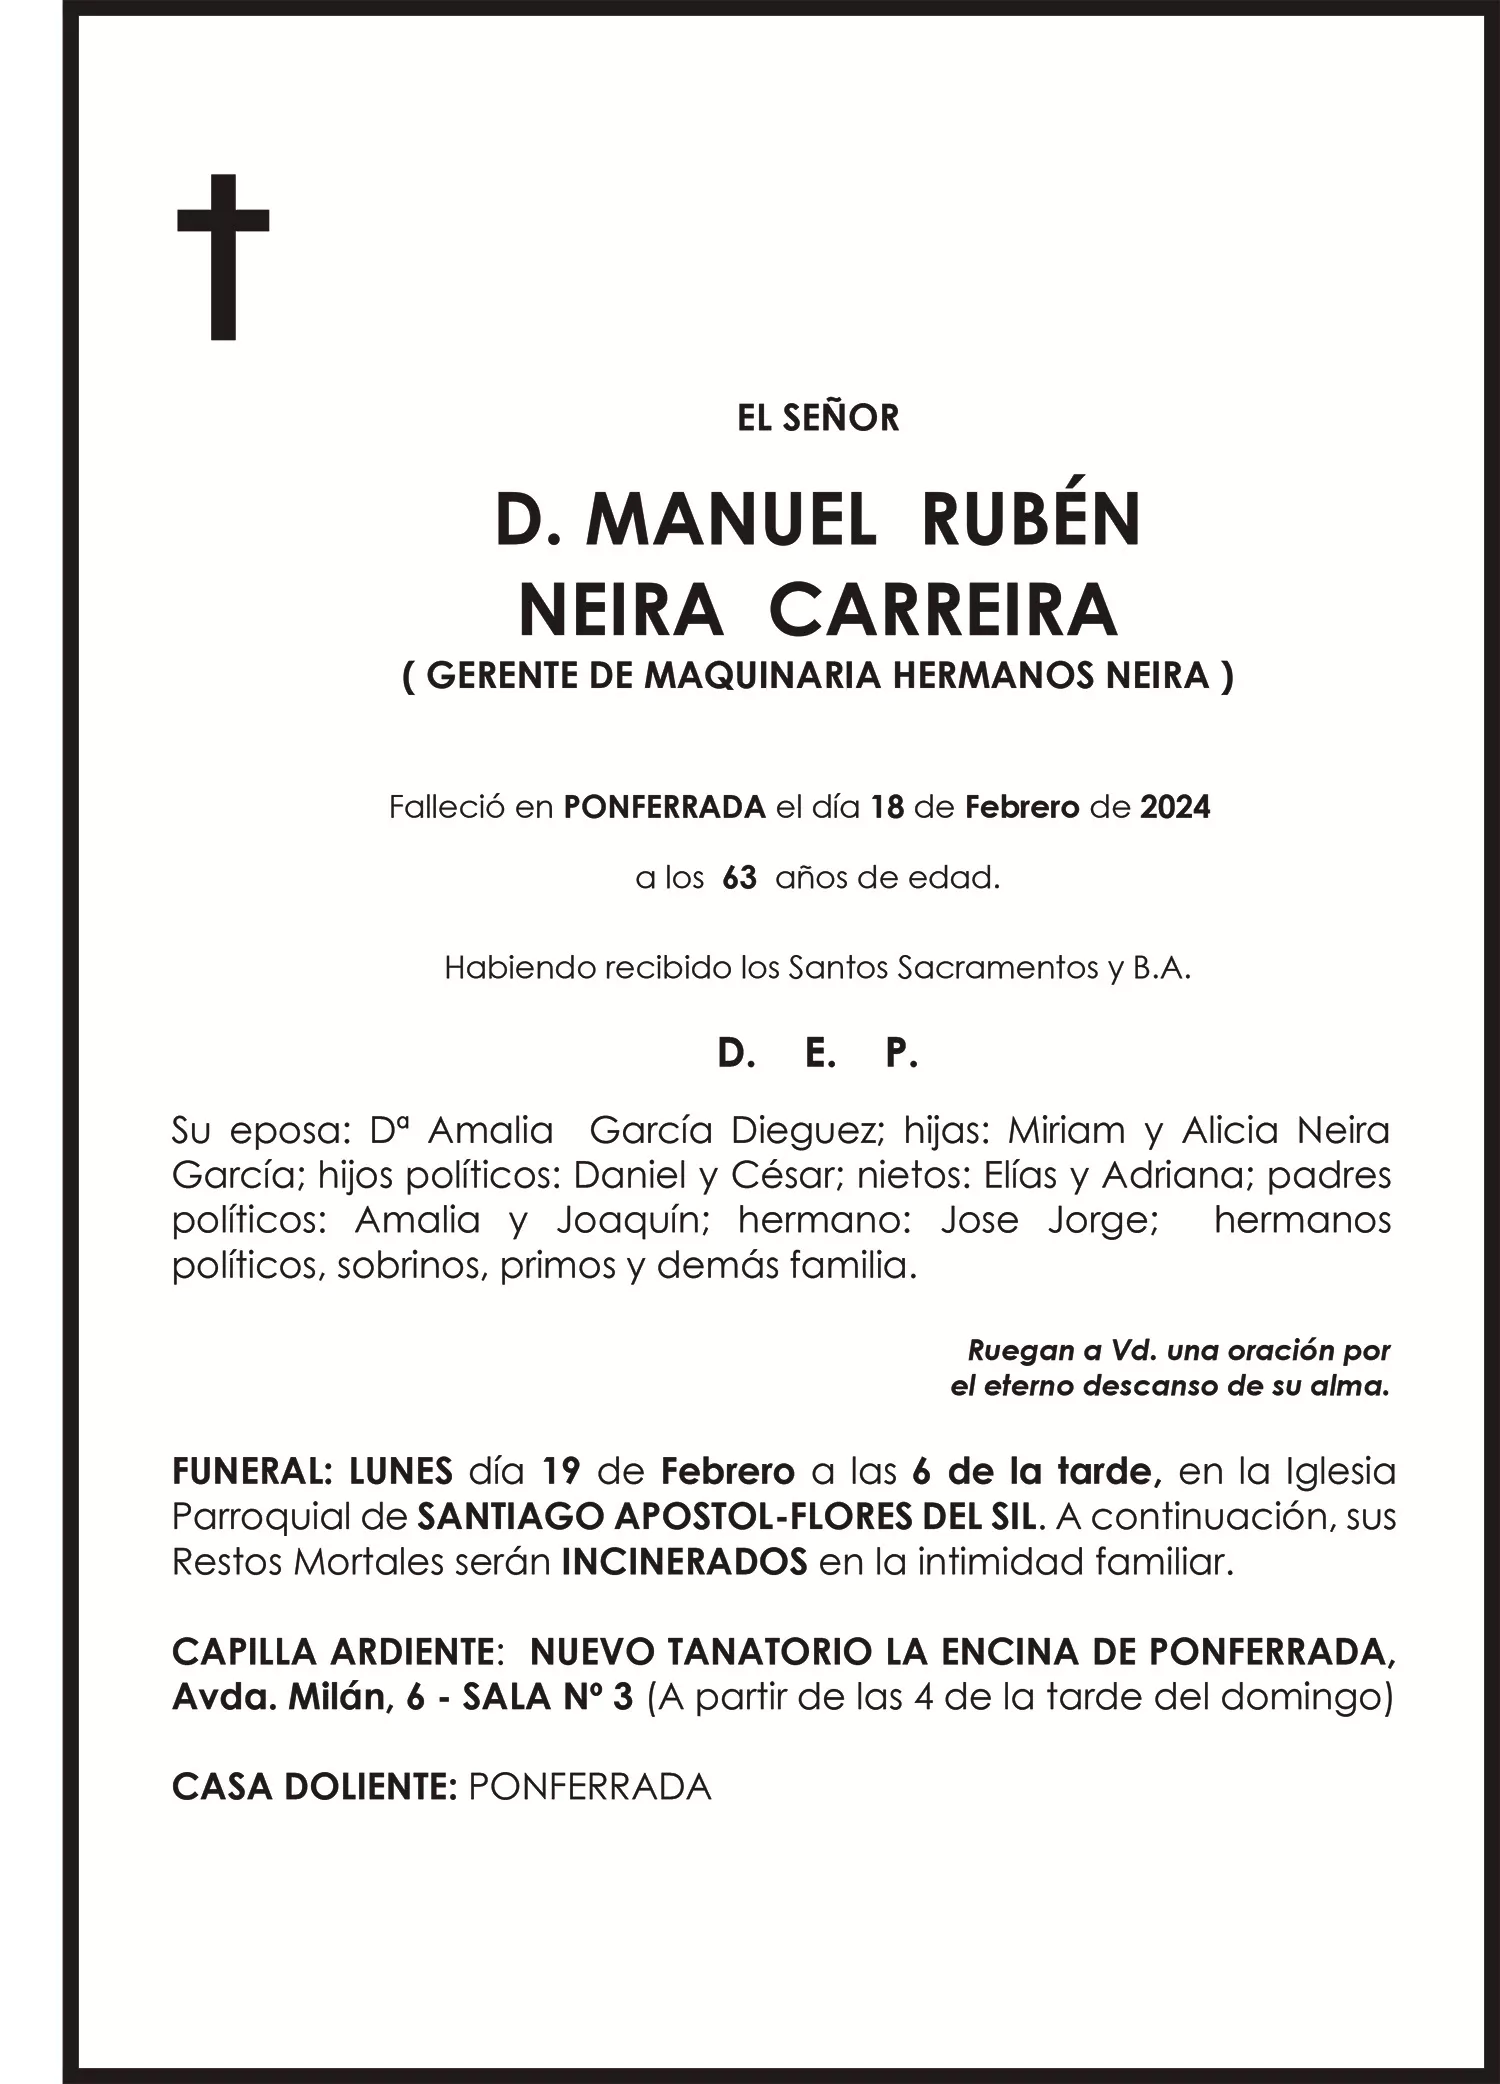 MANUEL RUBÉN NEIRA CARREIRA